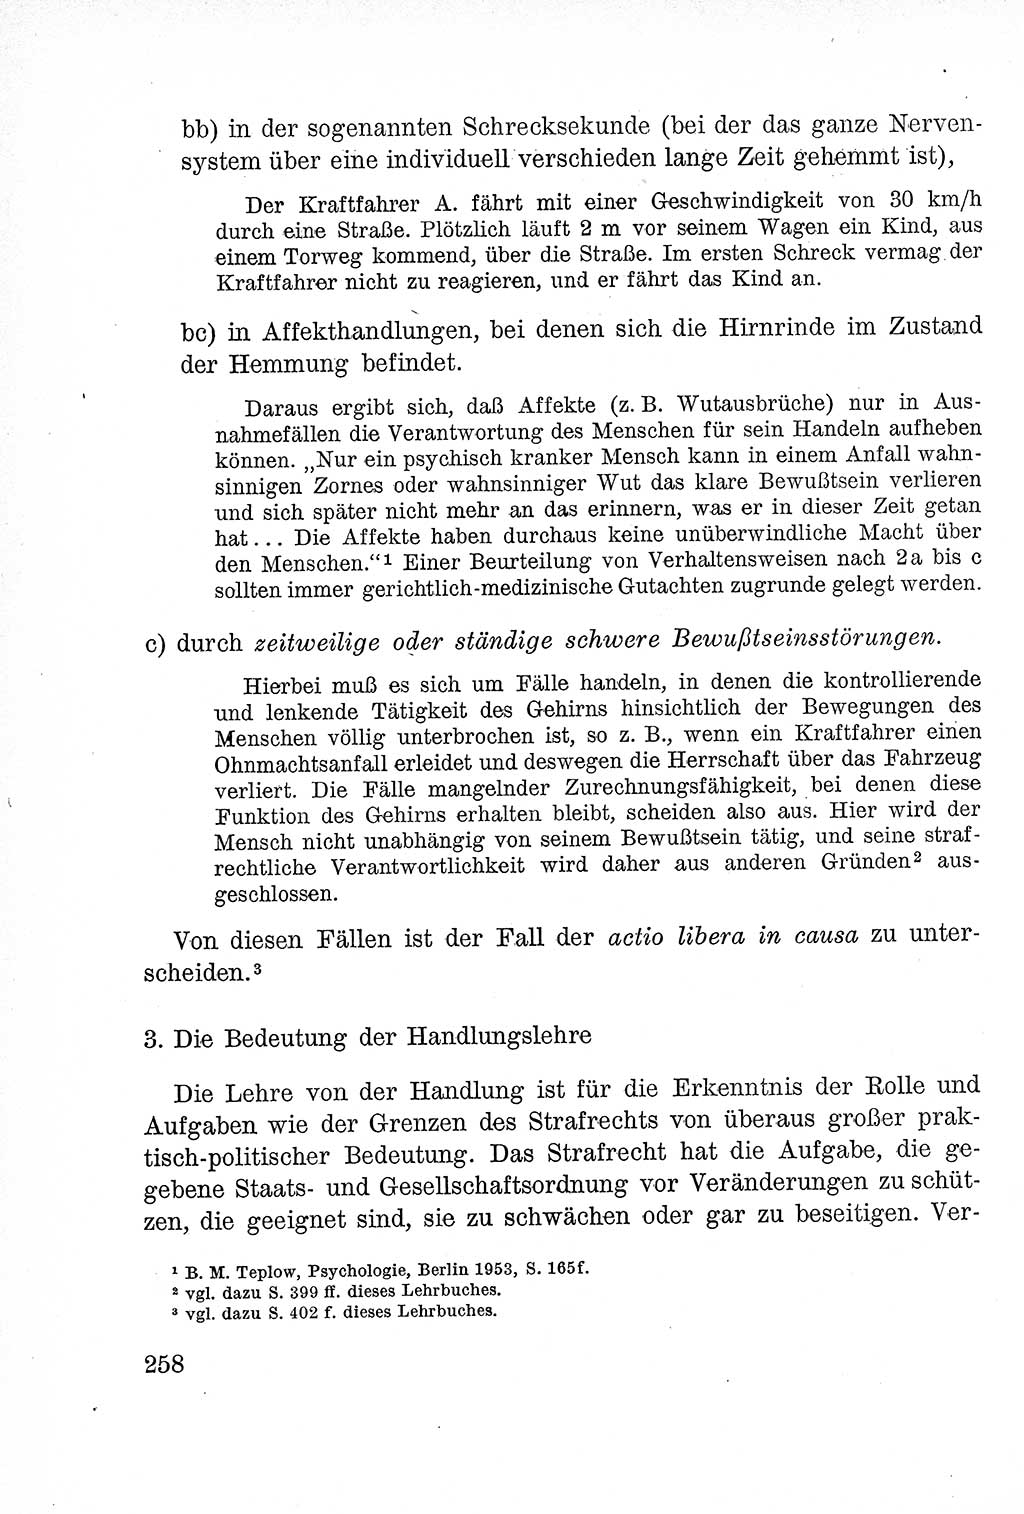 Lehrbuch des Strafrechts der Deutschen Demokratischen Republik (DDR), Allgemeiner Teil 1957, Seite 258 (Lb. Strafr. DDR AT 1957, S. 258)